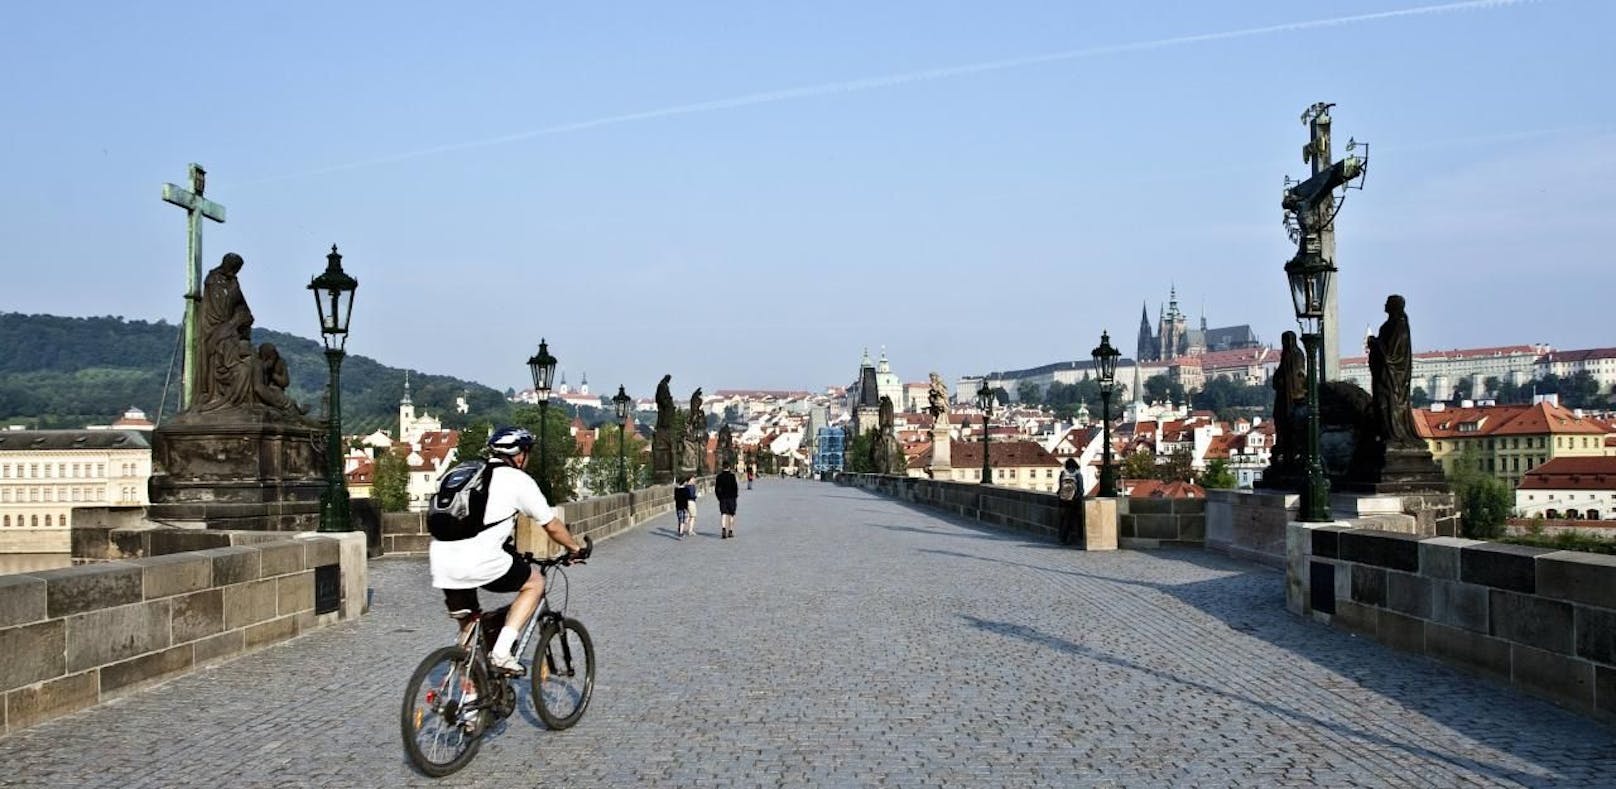 Prag verbannt Radfahrer aus der Stadt